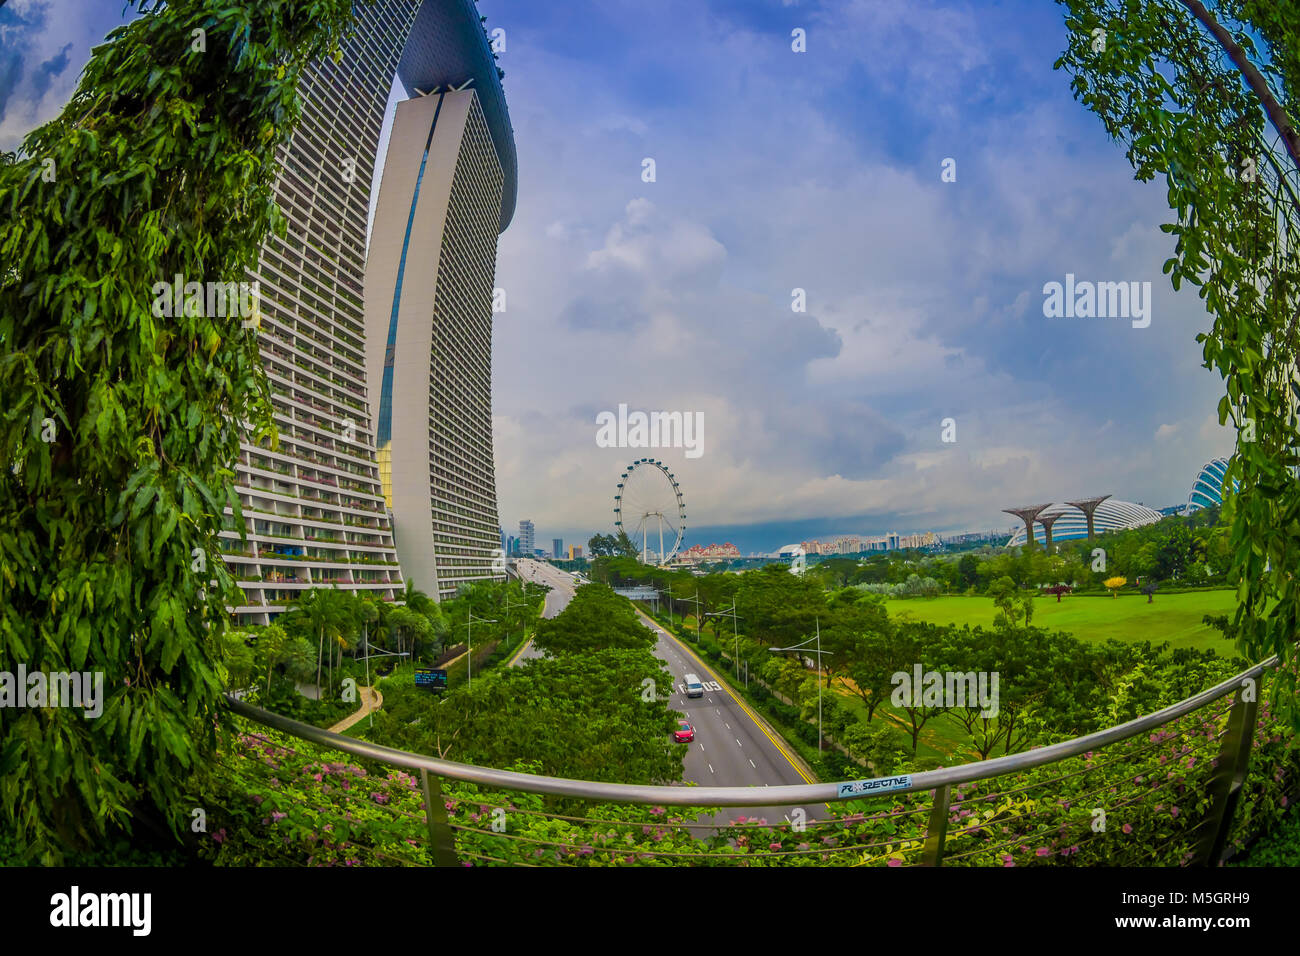 SINGAPORE, Singapore - 30 gennaio 2018: bellissimo paesaggio delle due torri della Marina Bay Sands Ressort contro un cielo nuvoloso, i mondi più costoso casino standalone al momento dell'apertura, nel 2010, a Singapore, effetto fish-eye Foto Stock